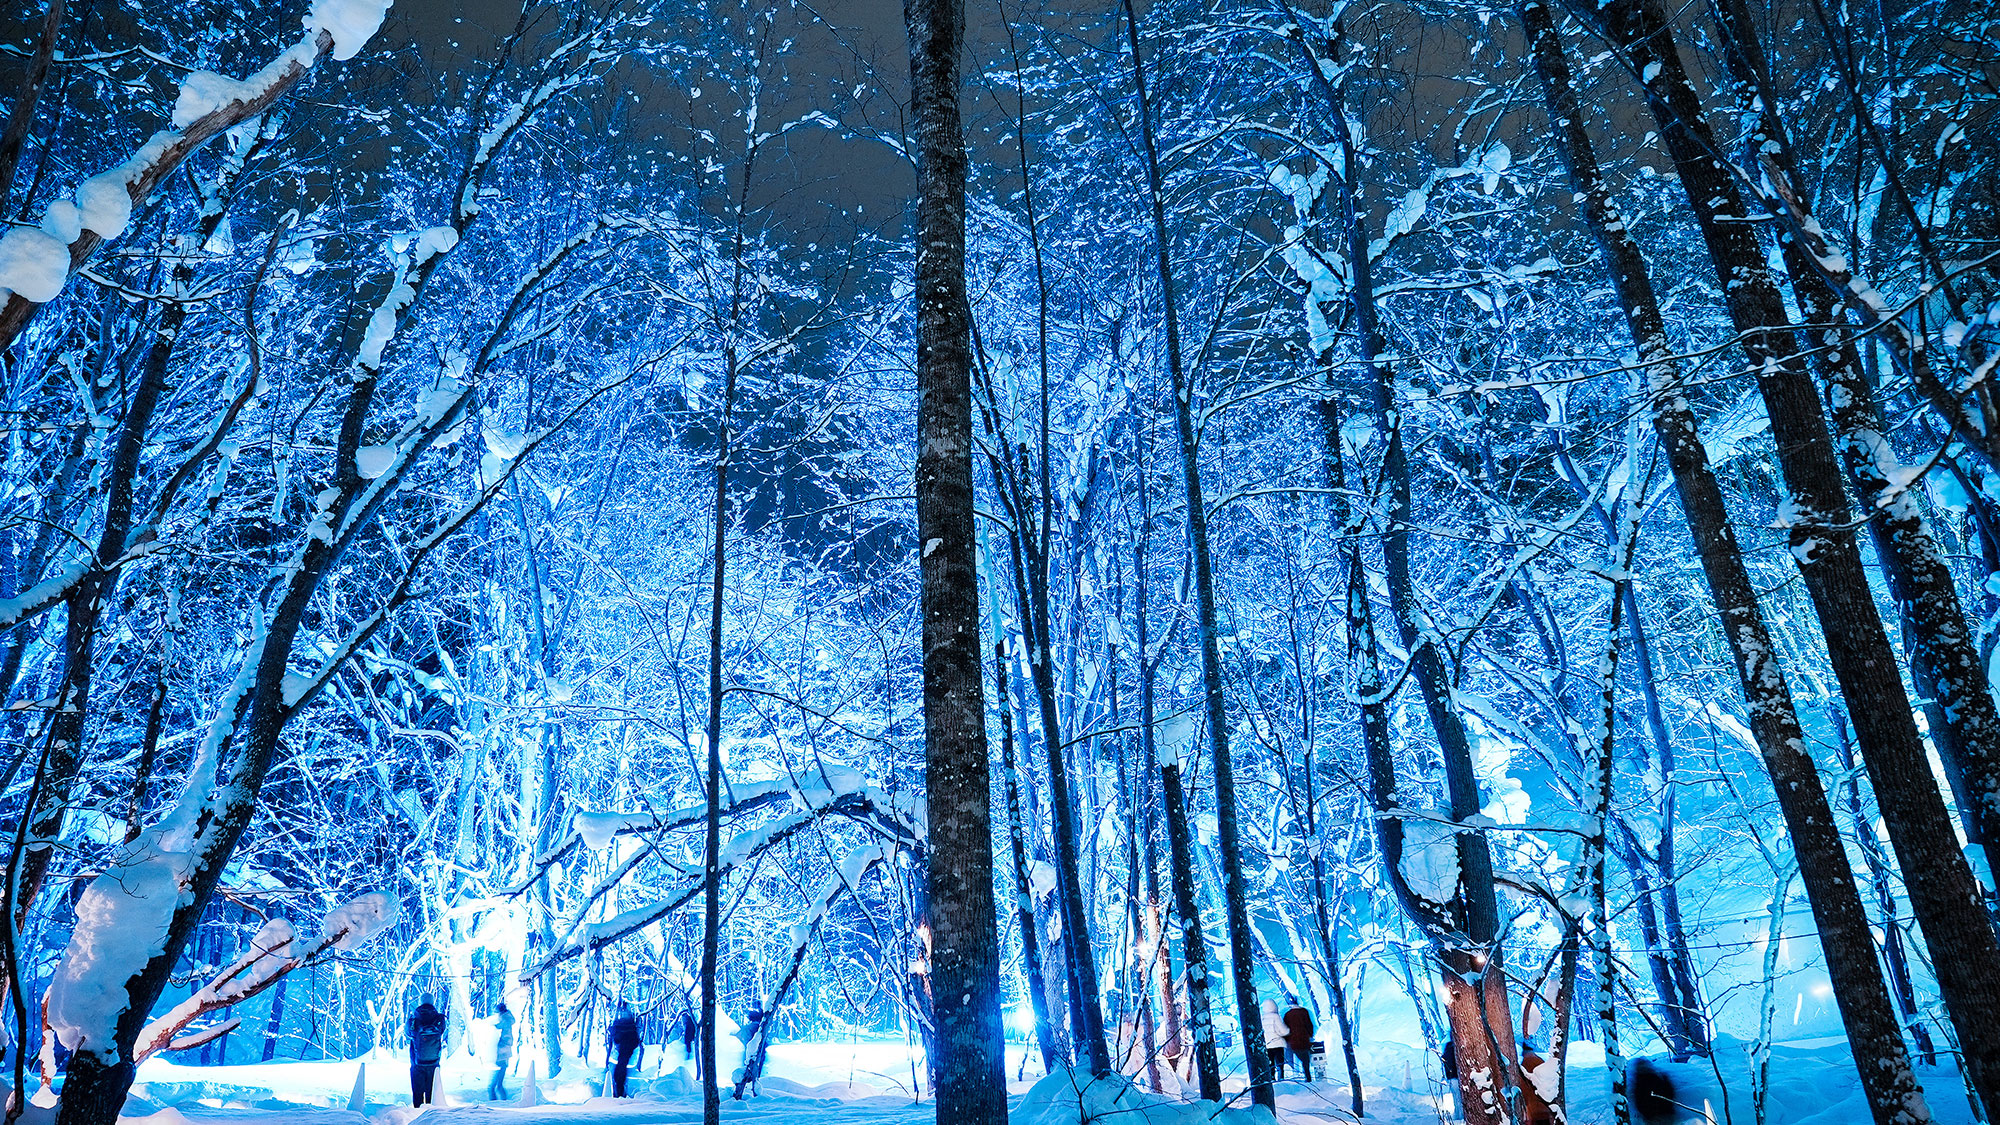 【雪灯路】毎年冬に開催される光のイベント。スノーキャンドルによる幻想的な灯りが定山渓の冬を彩ります。